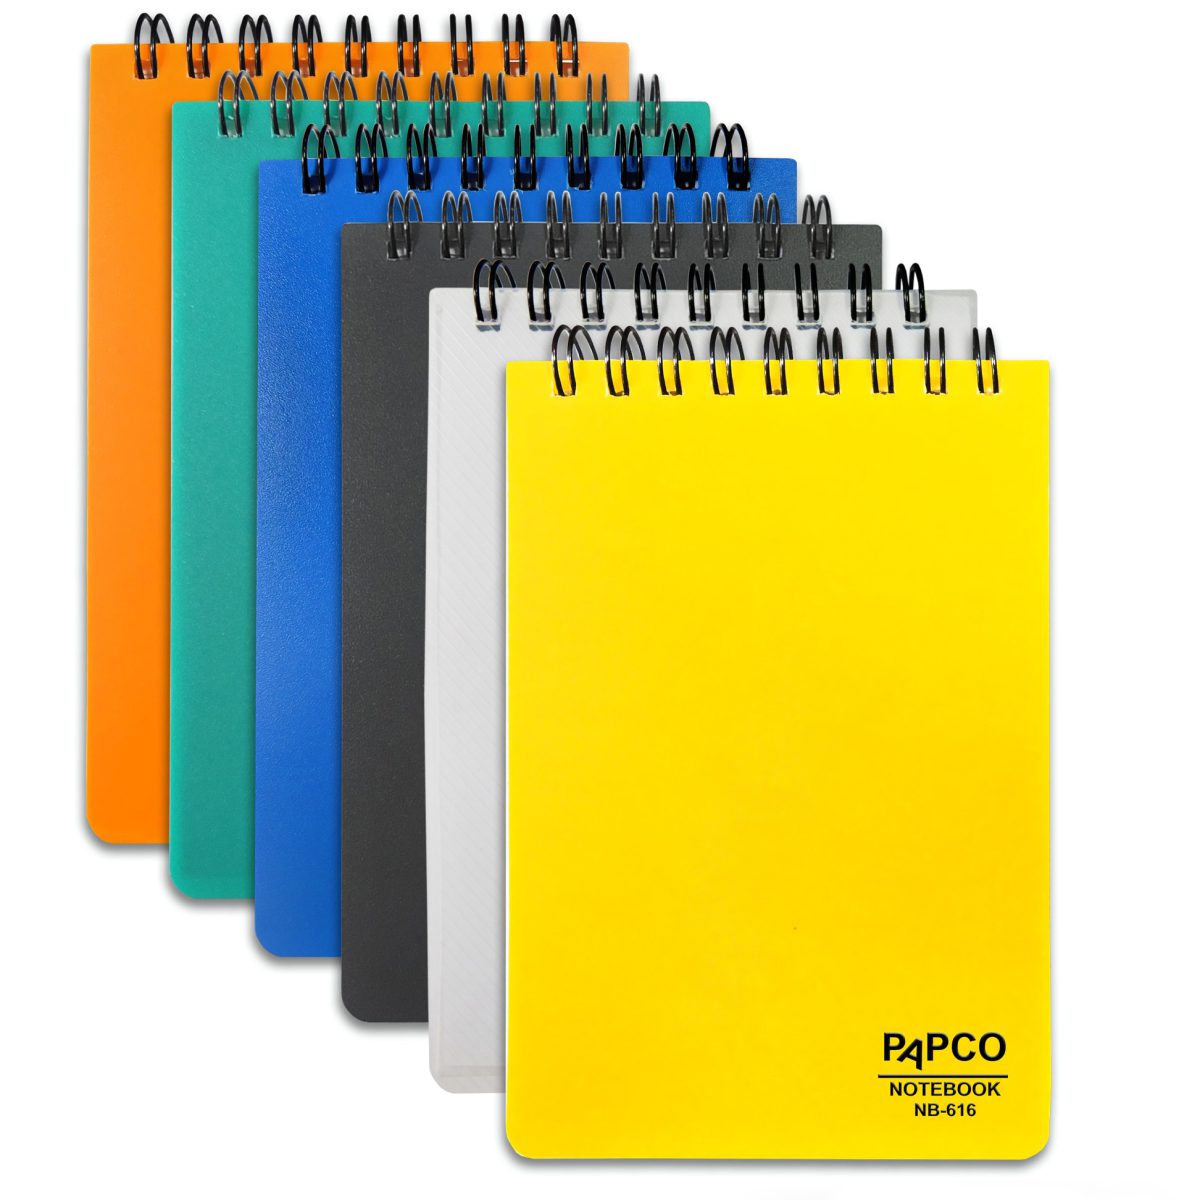 دفترچه یادداشت 100 برگ پاپکو مدل 616 بسته 2 عددی